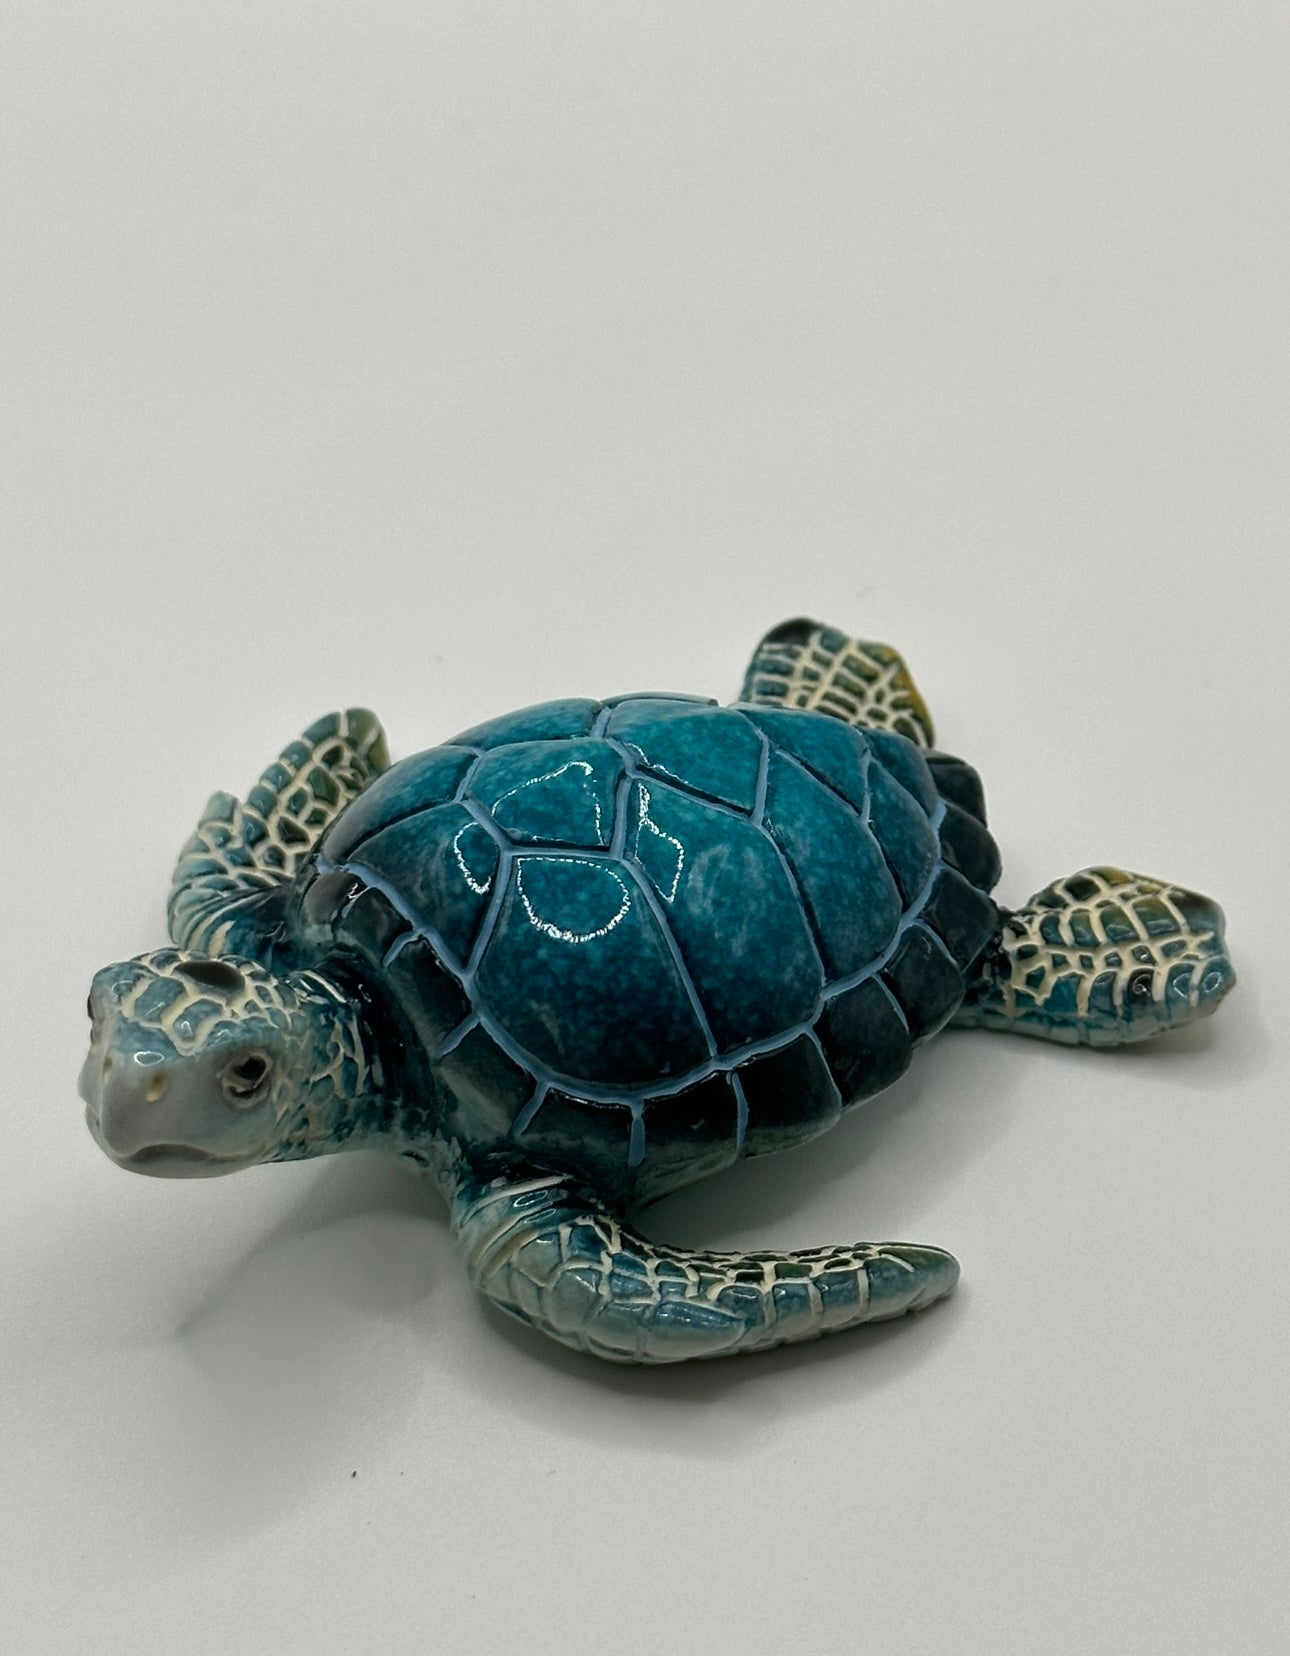 Bulk Q6 Aqua Turtle Figurine